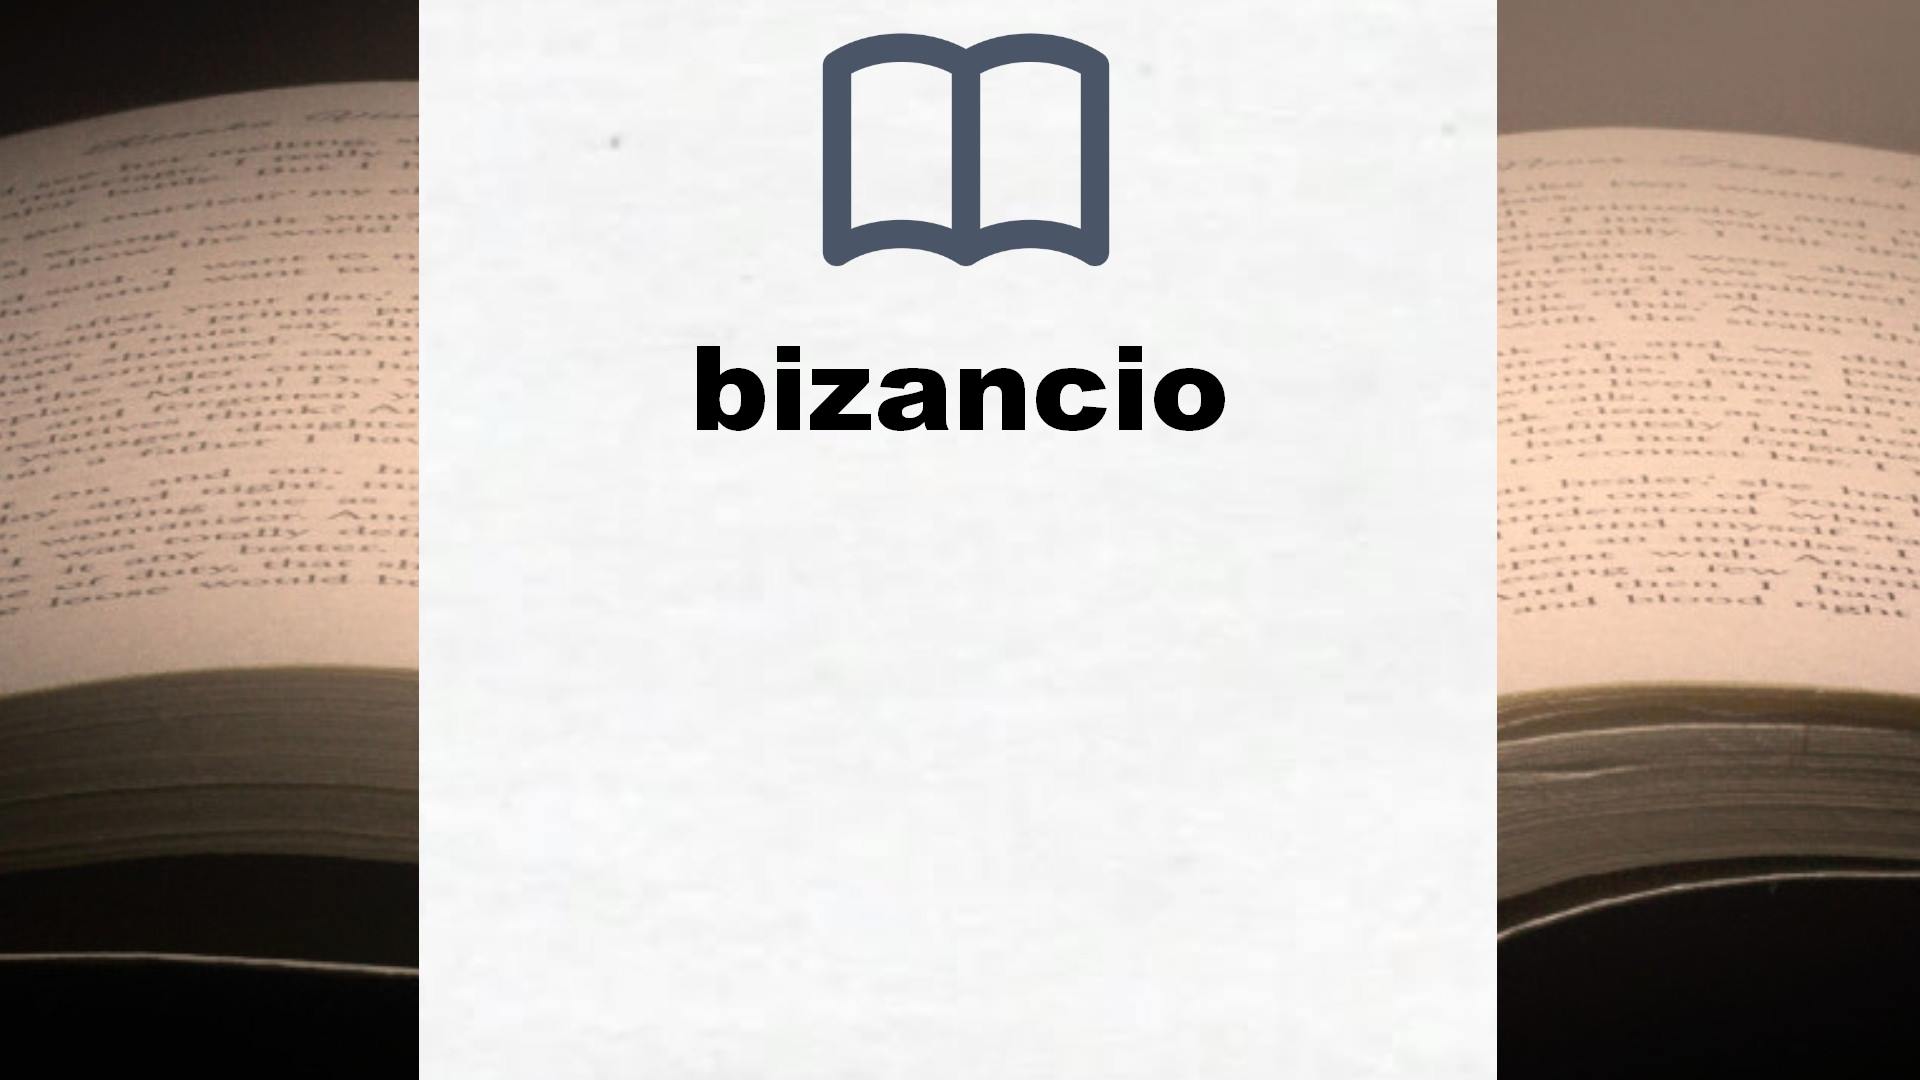 Libros sobre bizancio